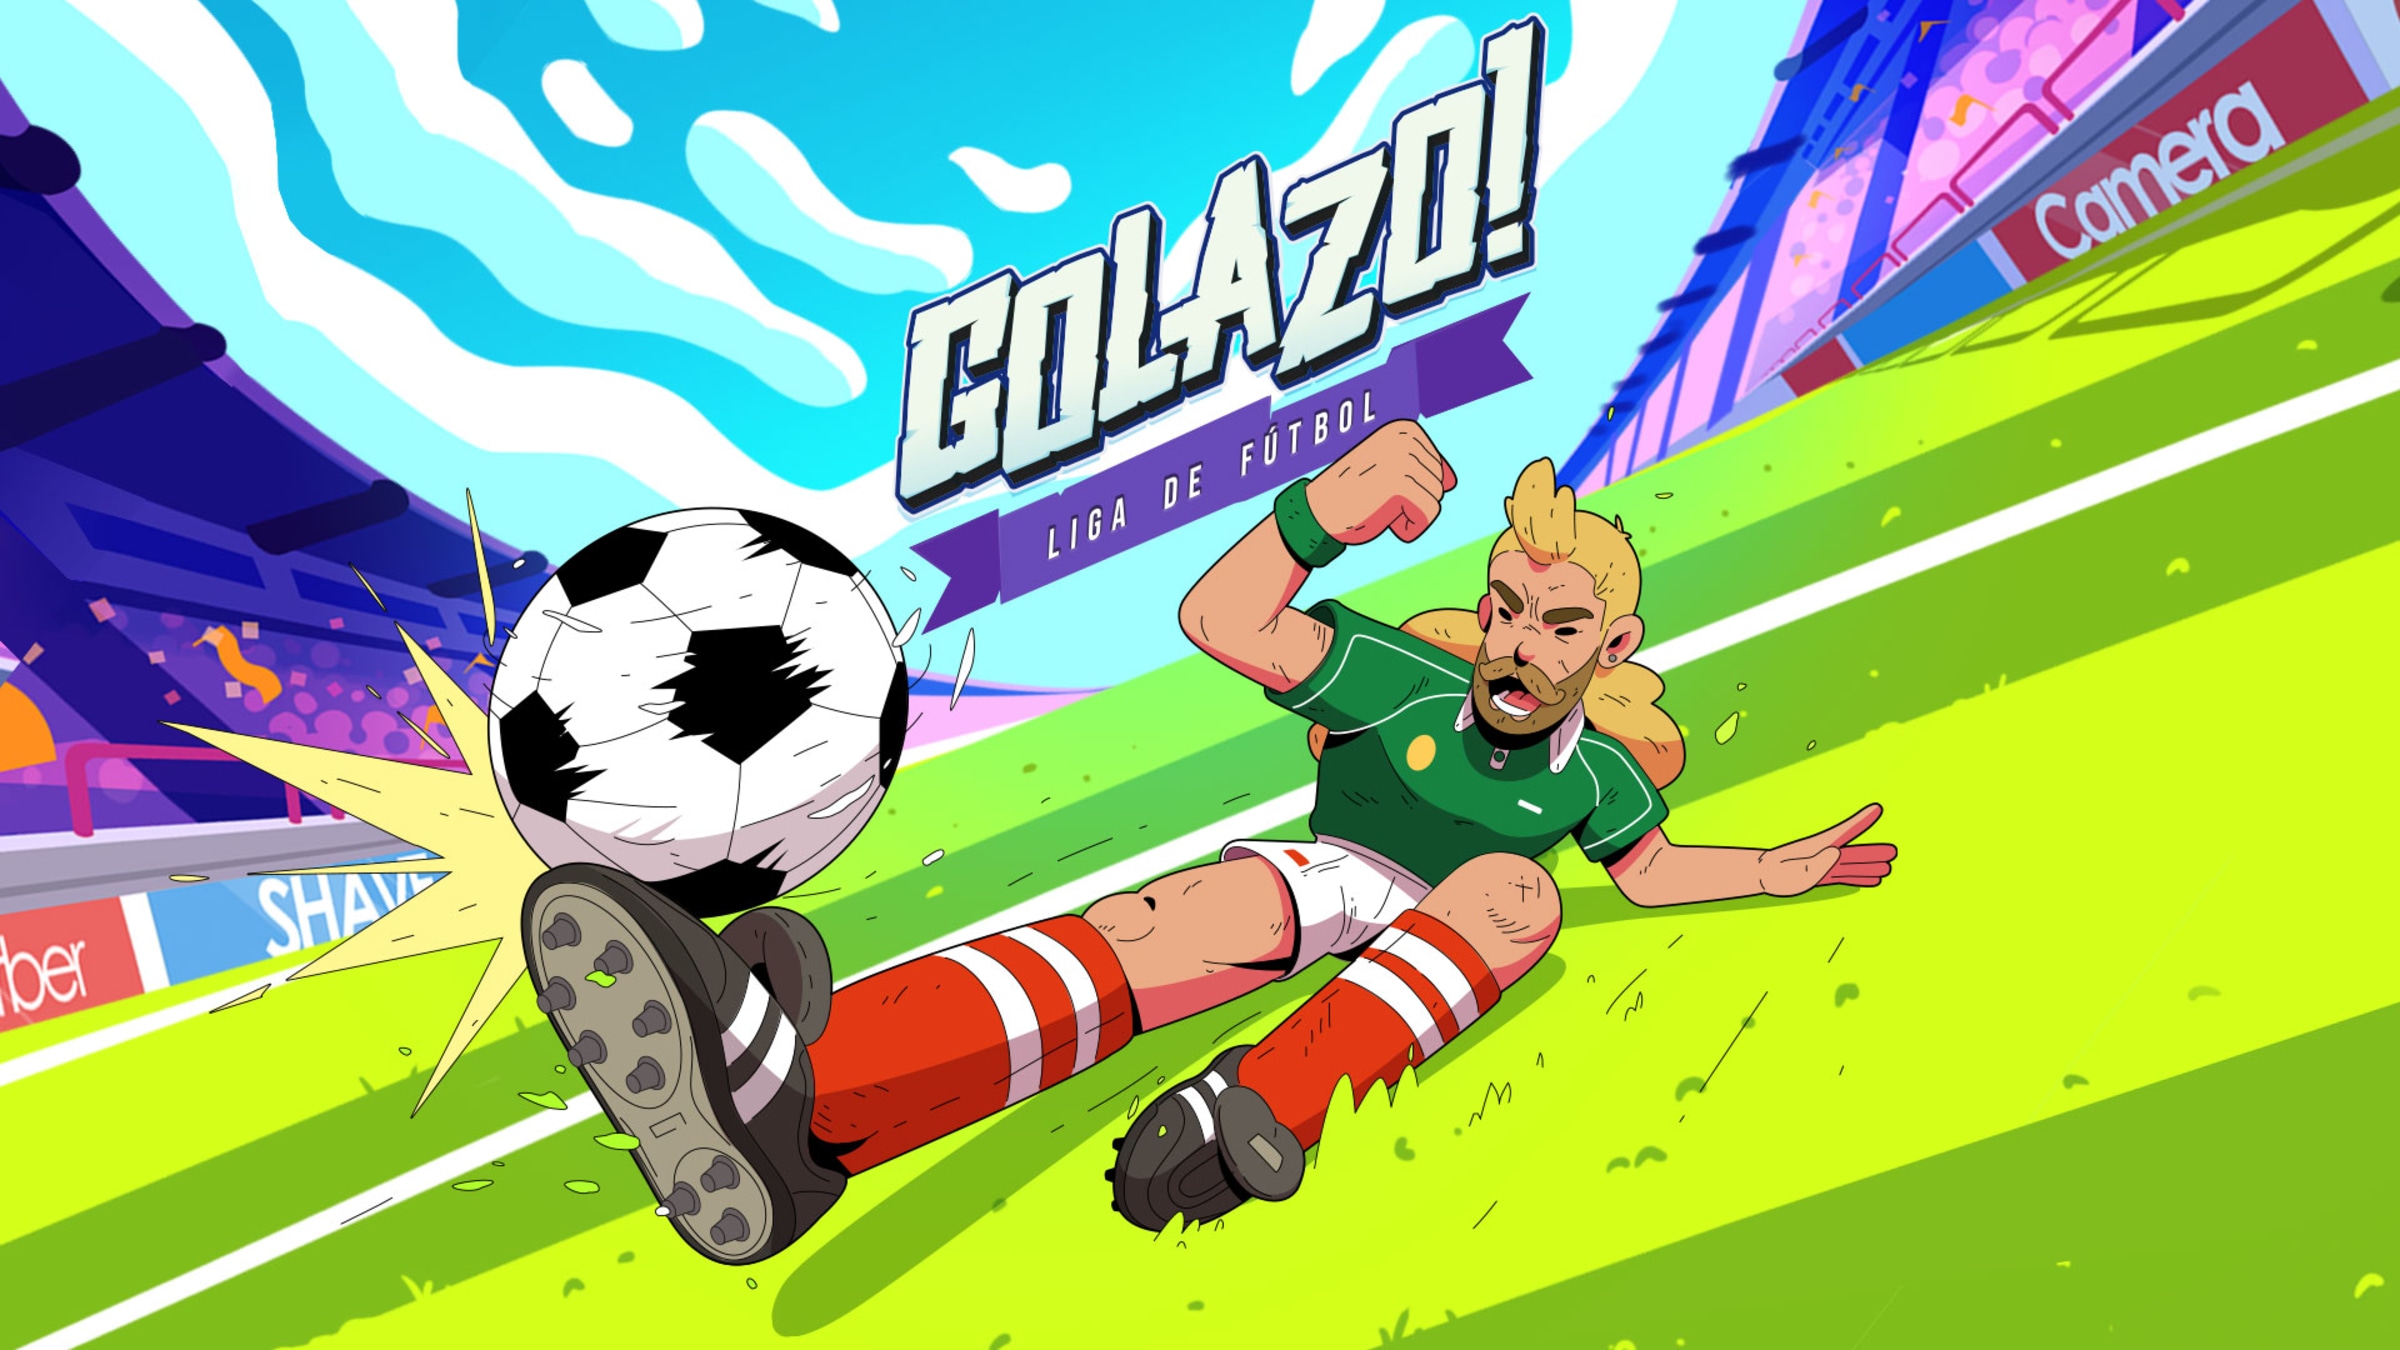 Golazo!.. NUEVO JUEGO DE FÚTBOL EN PS4/XBOX/SWITCH !!! 